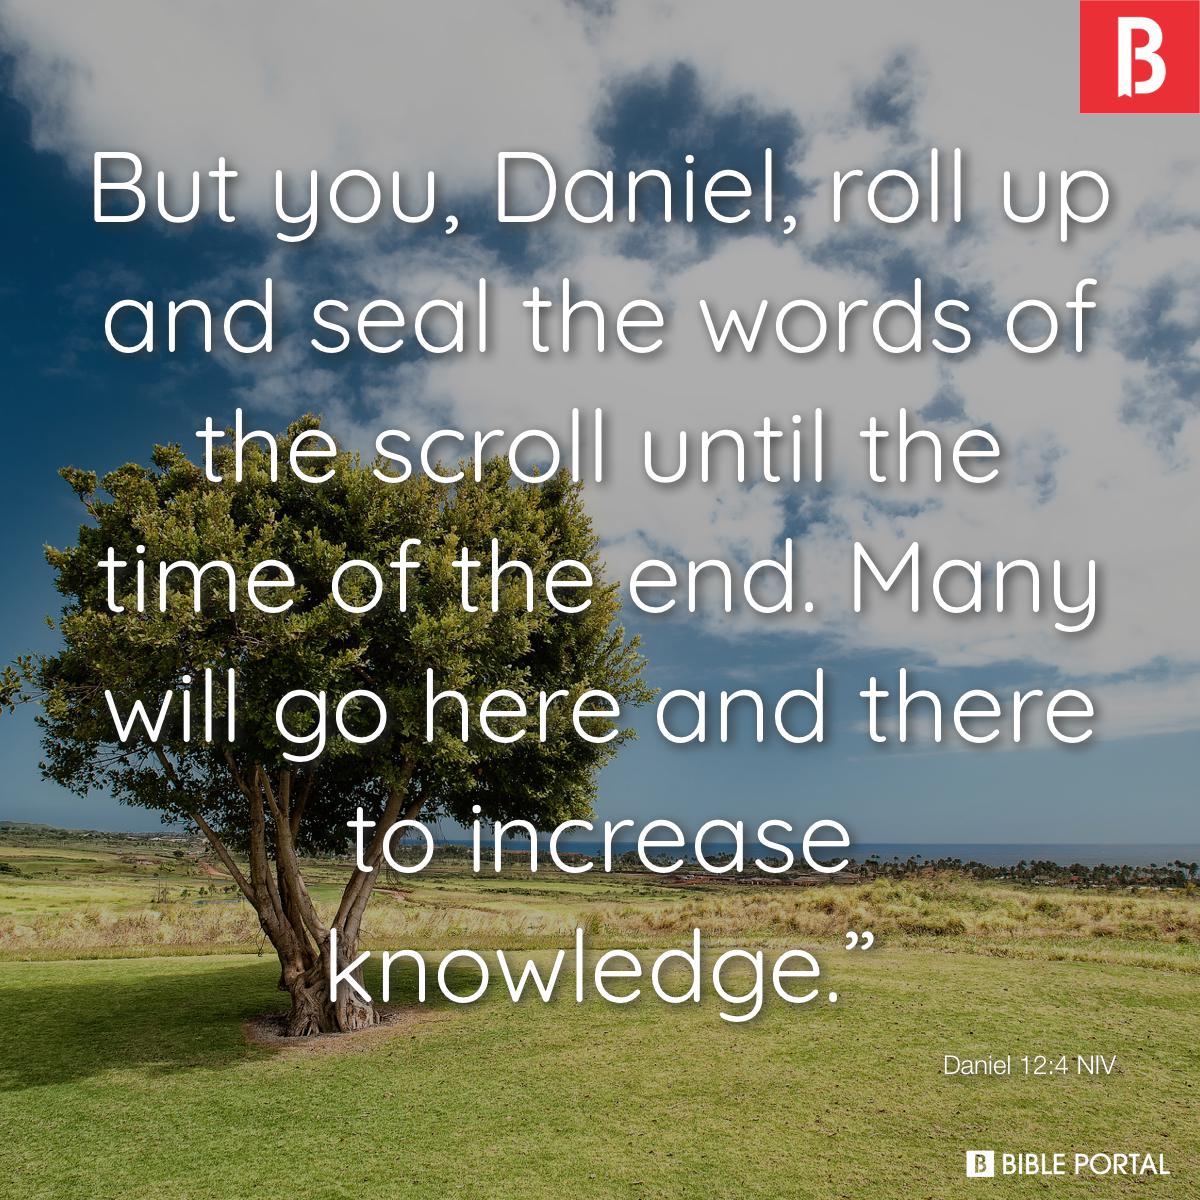 Daniel 12:4 NIV